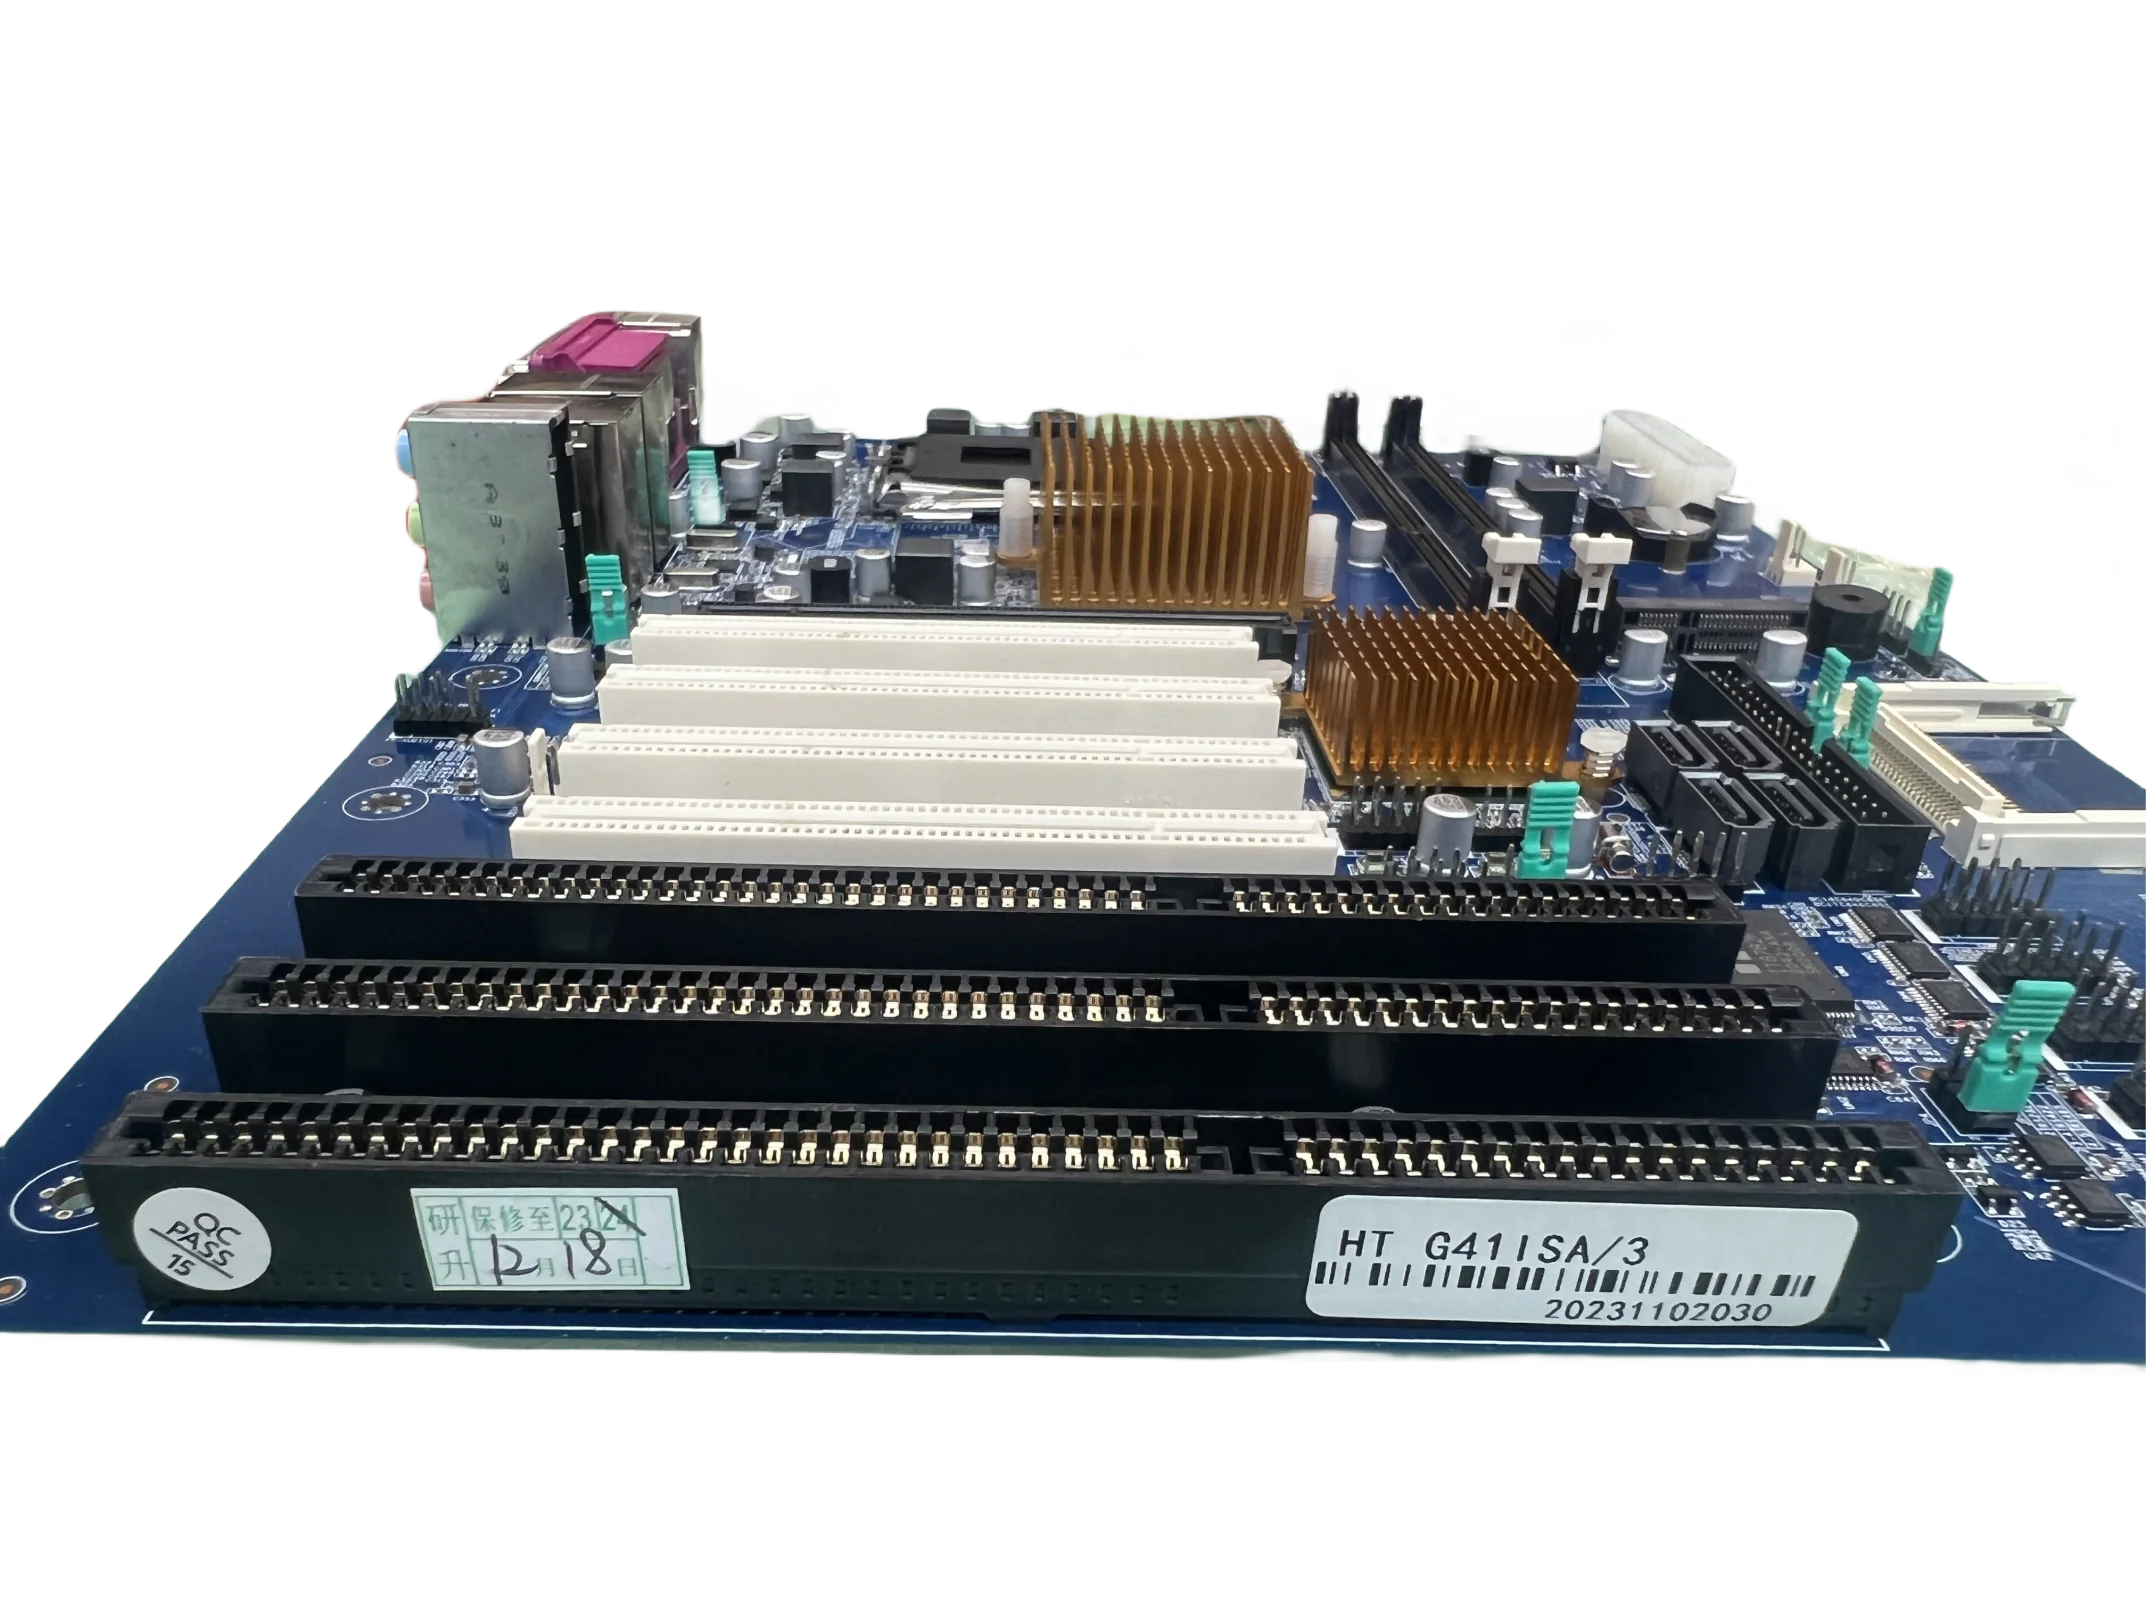 Nuevo G41 con 3 tragamonedas ISA INDUSTRIAL TARJETA 4 Tarjetas de red duales PCI DDR3 775 PINS Y CPU E7500 MEMORIA 4GB